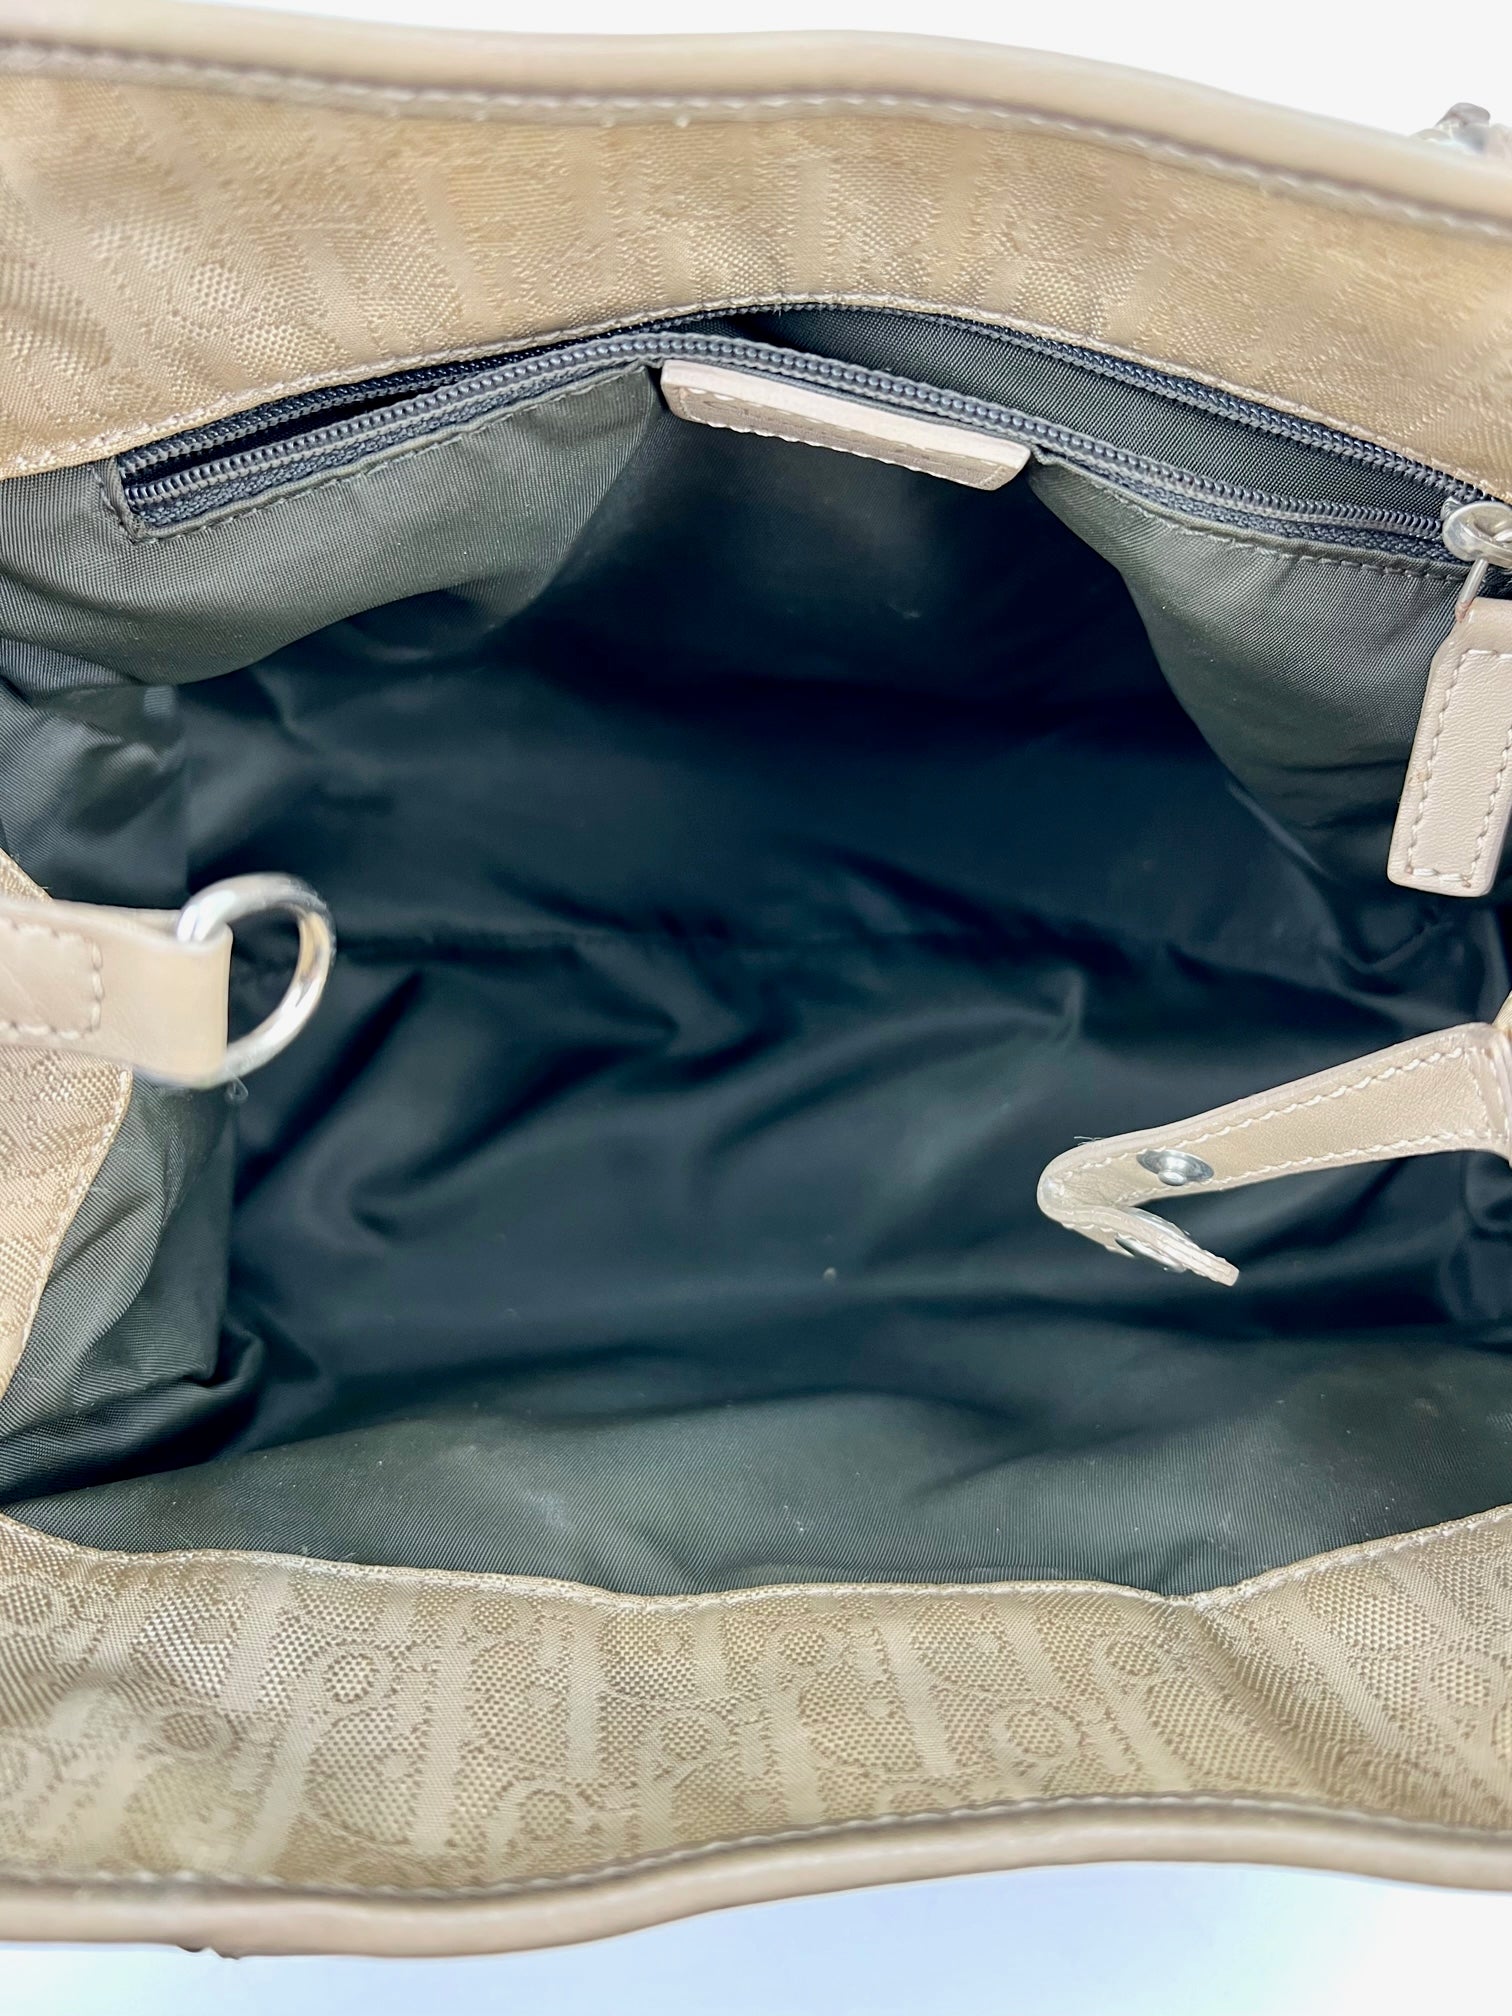 Christian Dior Diorissimo Canvas Small Beige Tote Bag